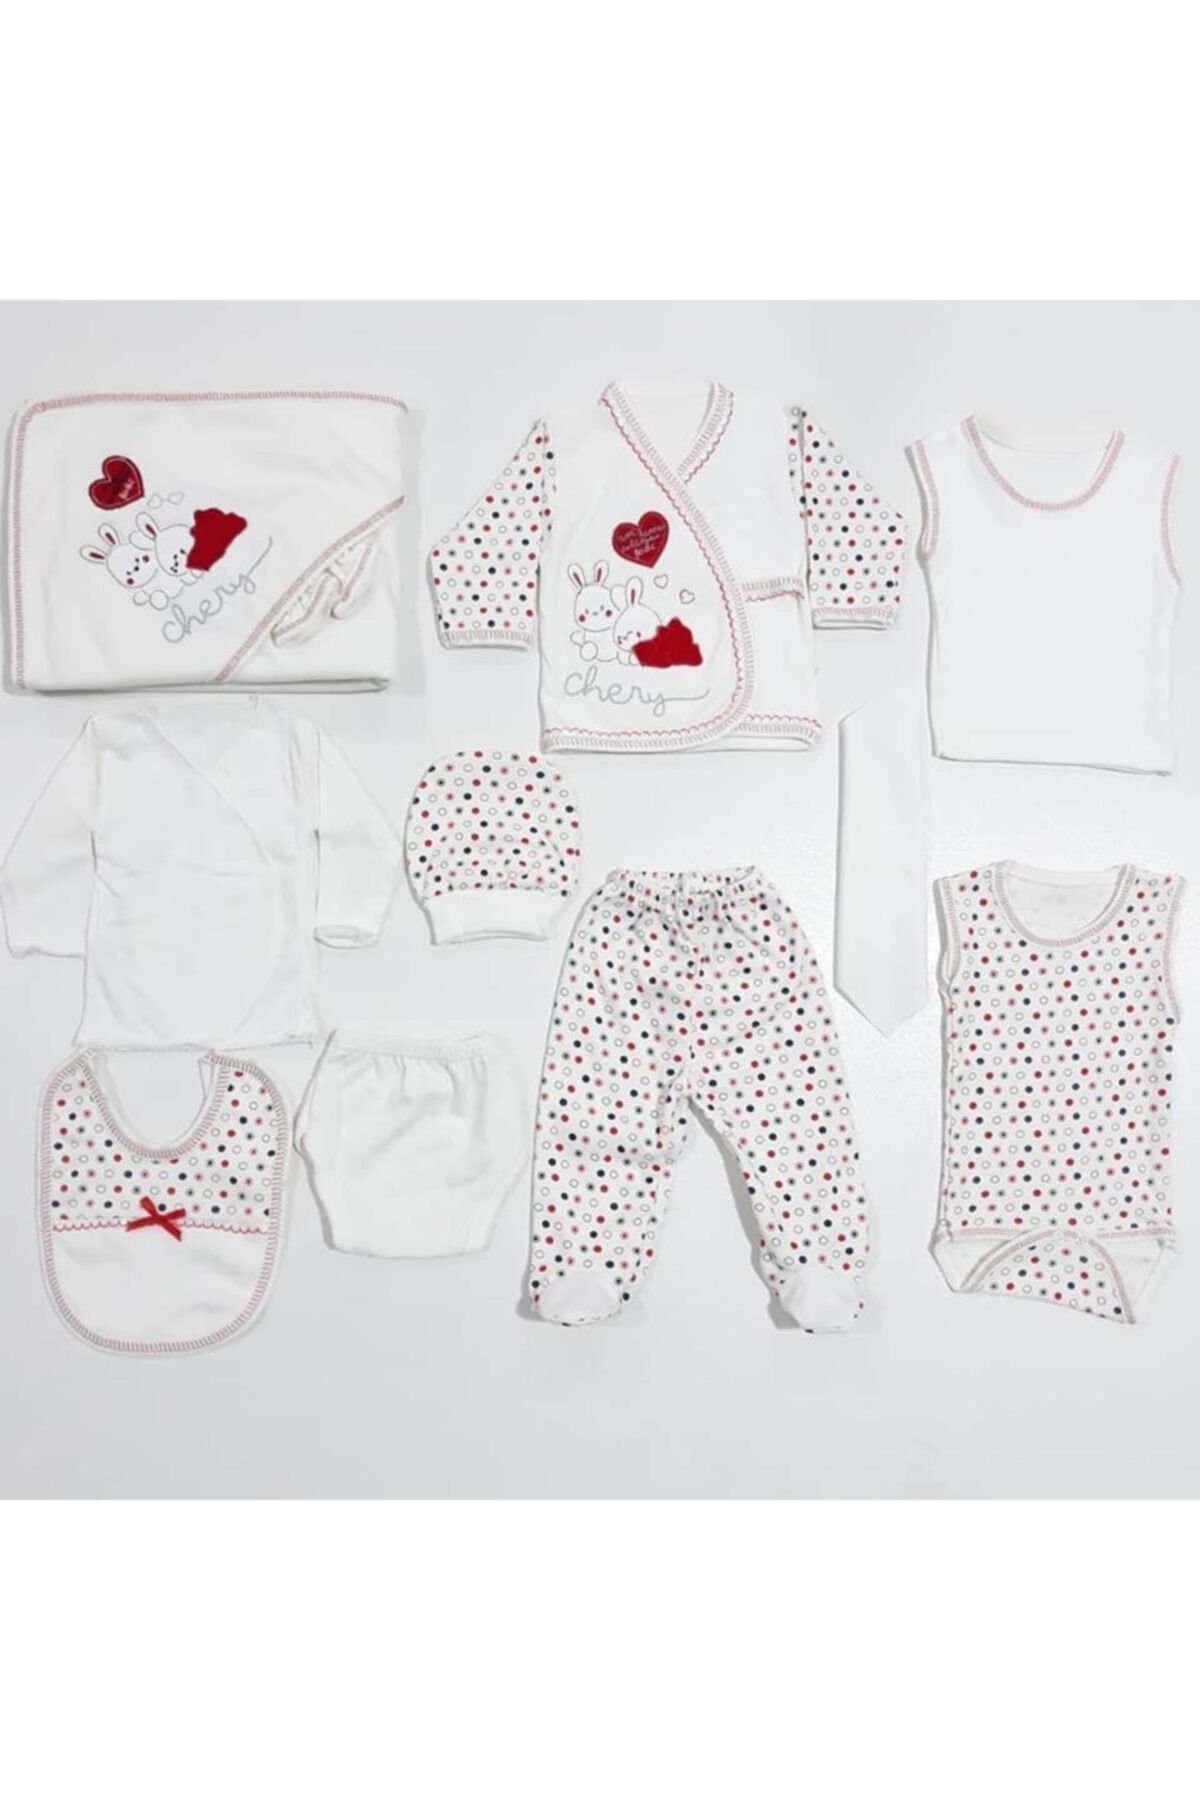 bebegen Unisex Bebek Krem Kalpli Tavşan Puanlı 11 Parça Hastane Çıkış Seti